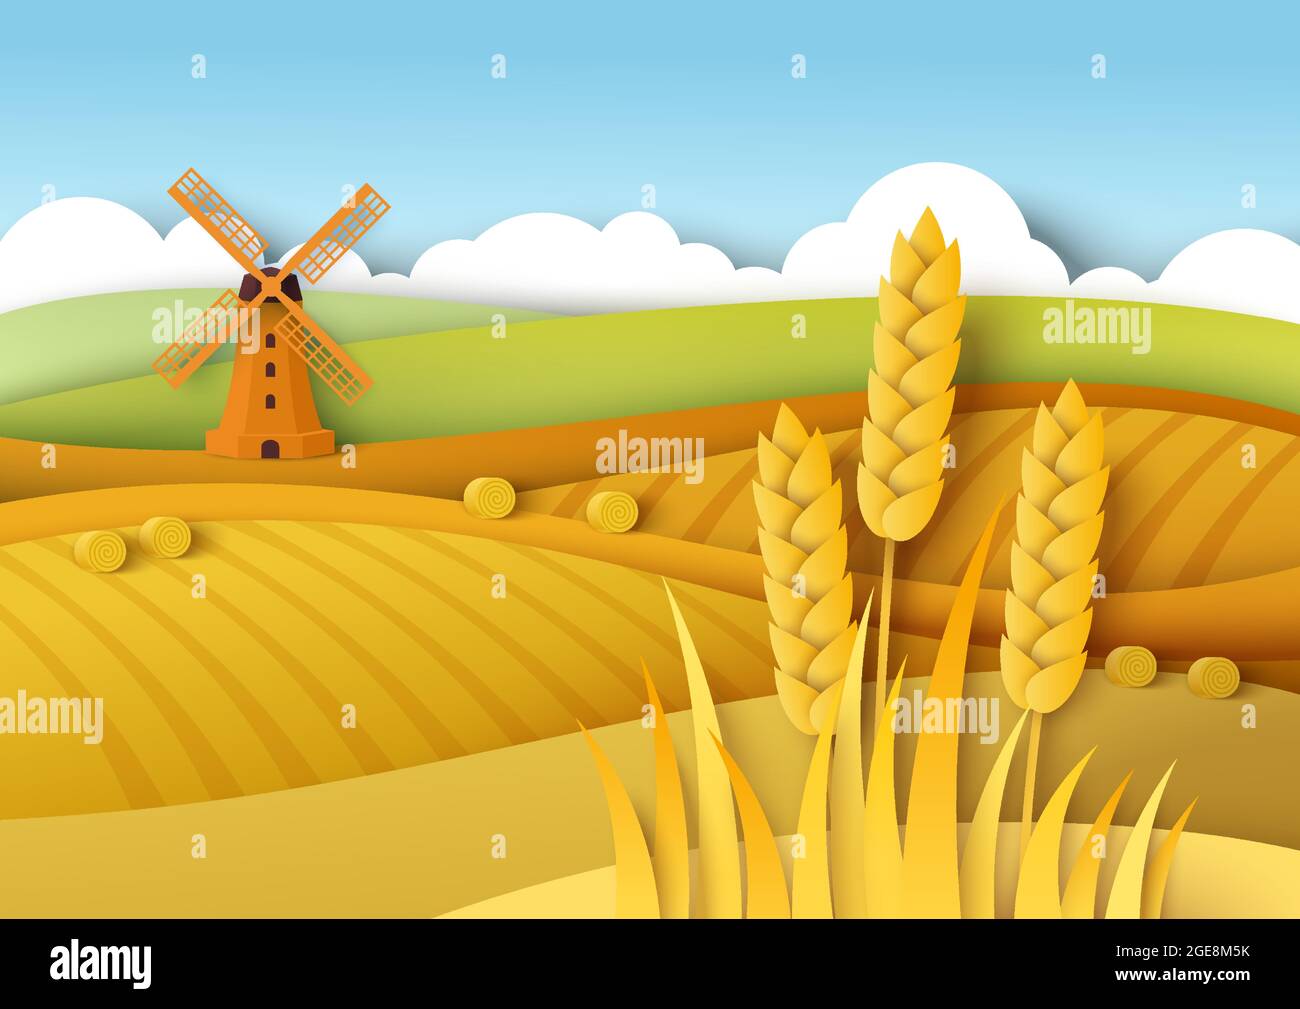 Ländliche Landschaft. Weizenfelder, Windmühle, Vektor-Papier geschnitten Illustration. Feldfrucht, Landwirtschaft, Landwirtschaft. Erntezeit Stock Vektor